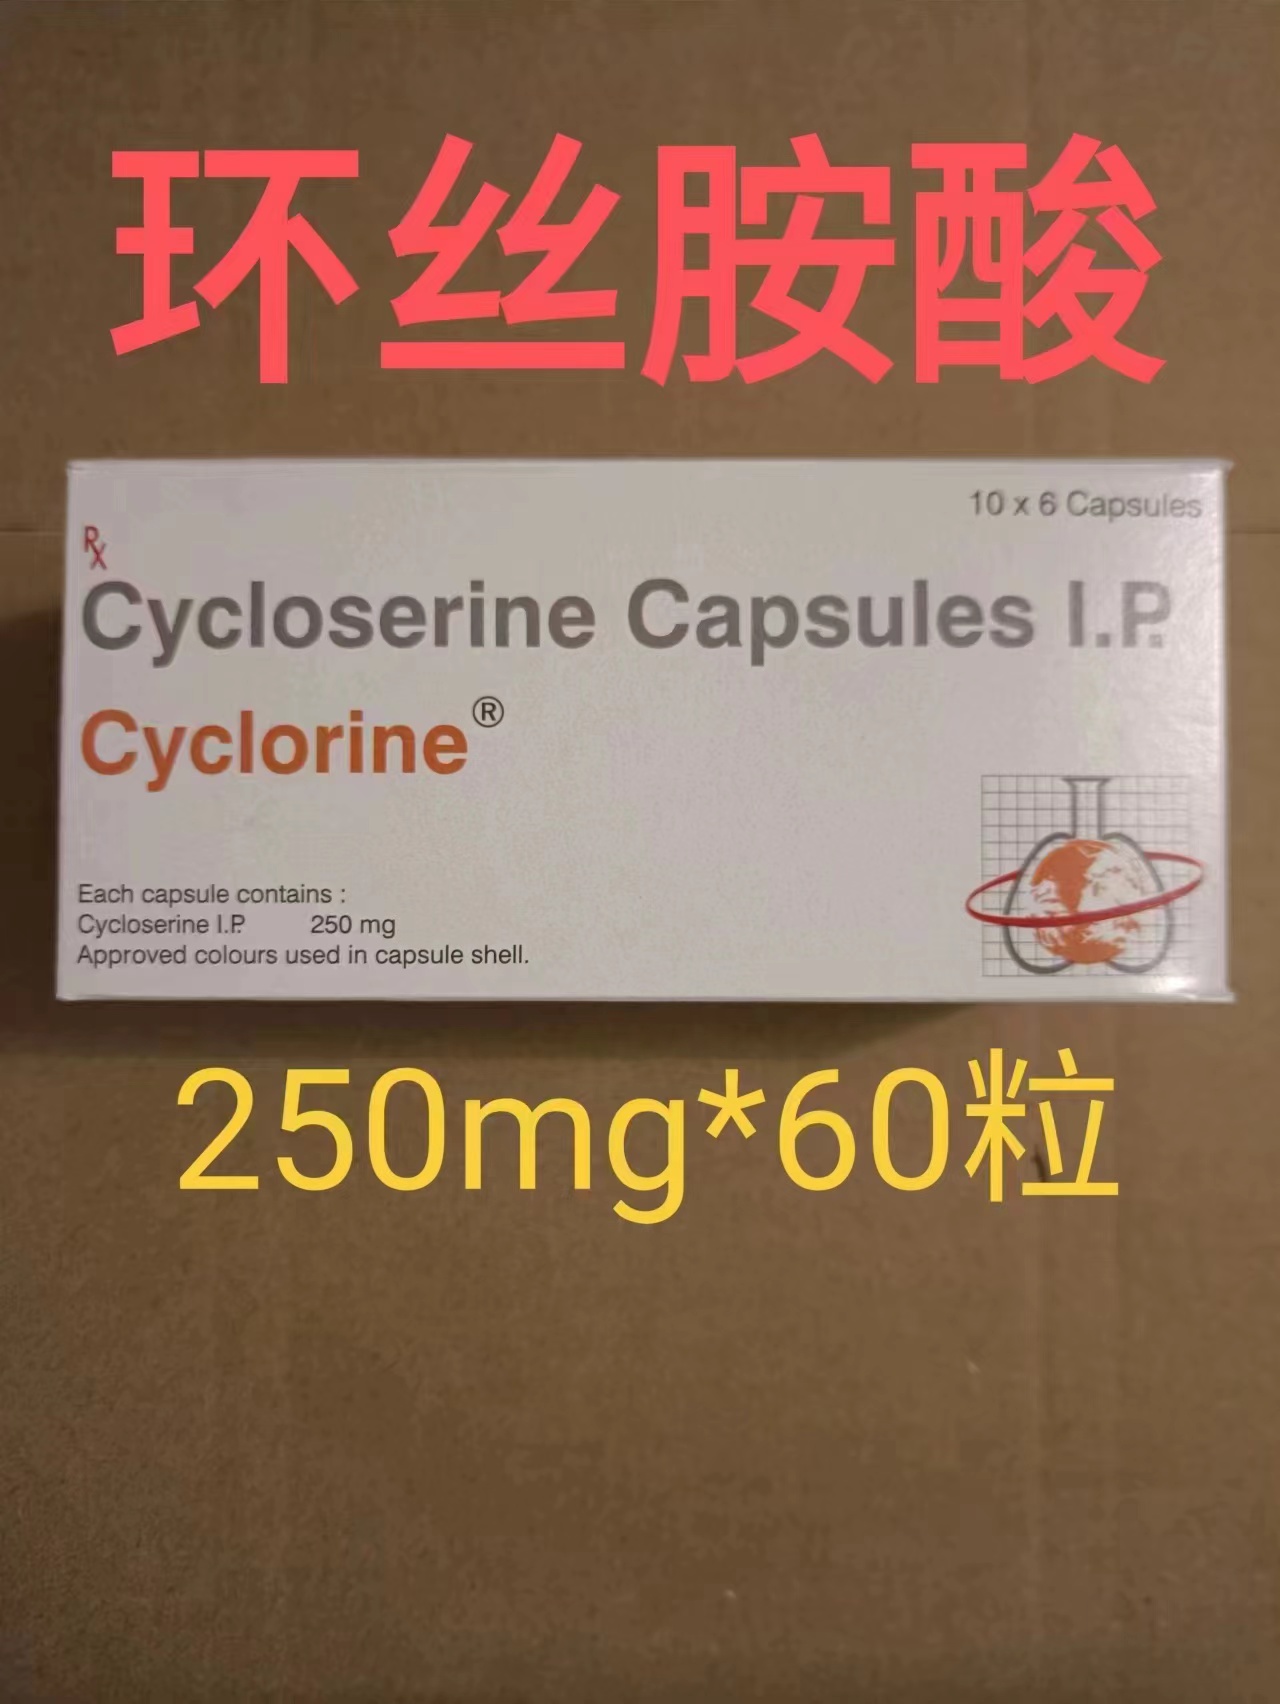 环丝氨酸(Cycloserine)现在国家报销吗